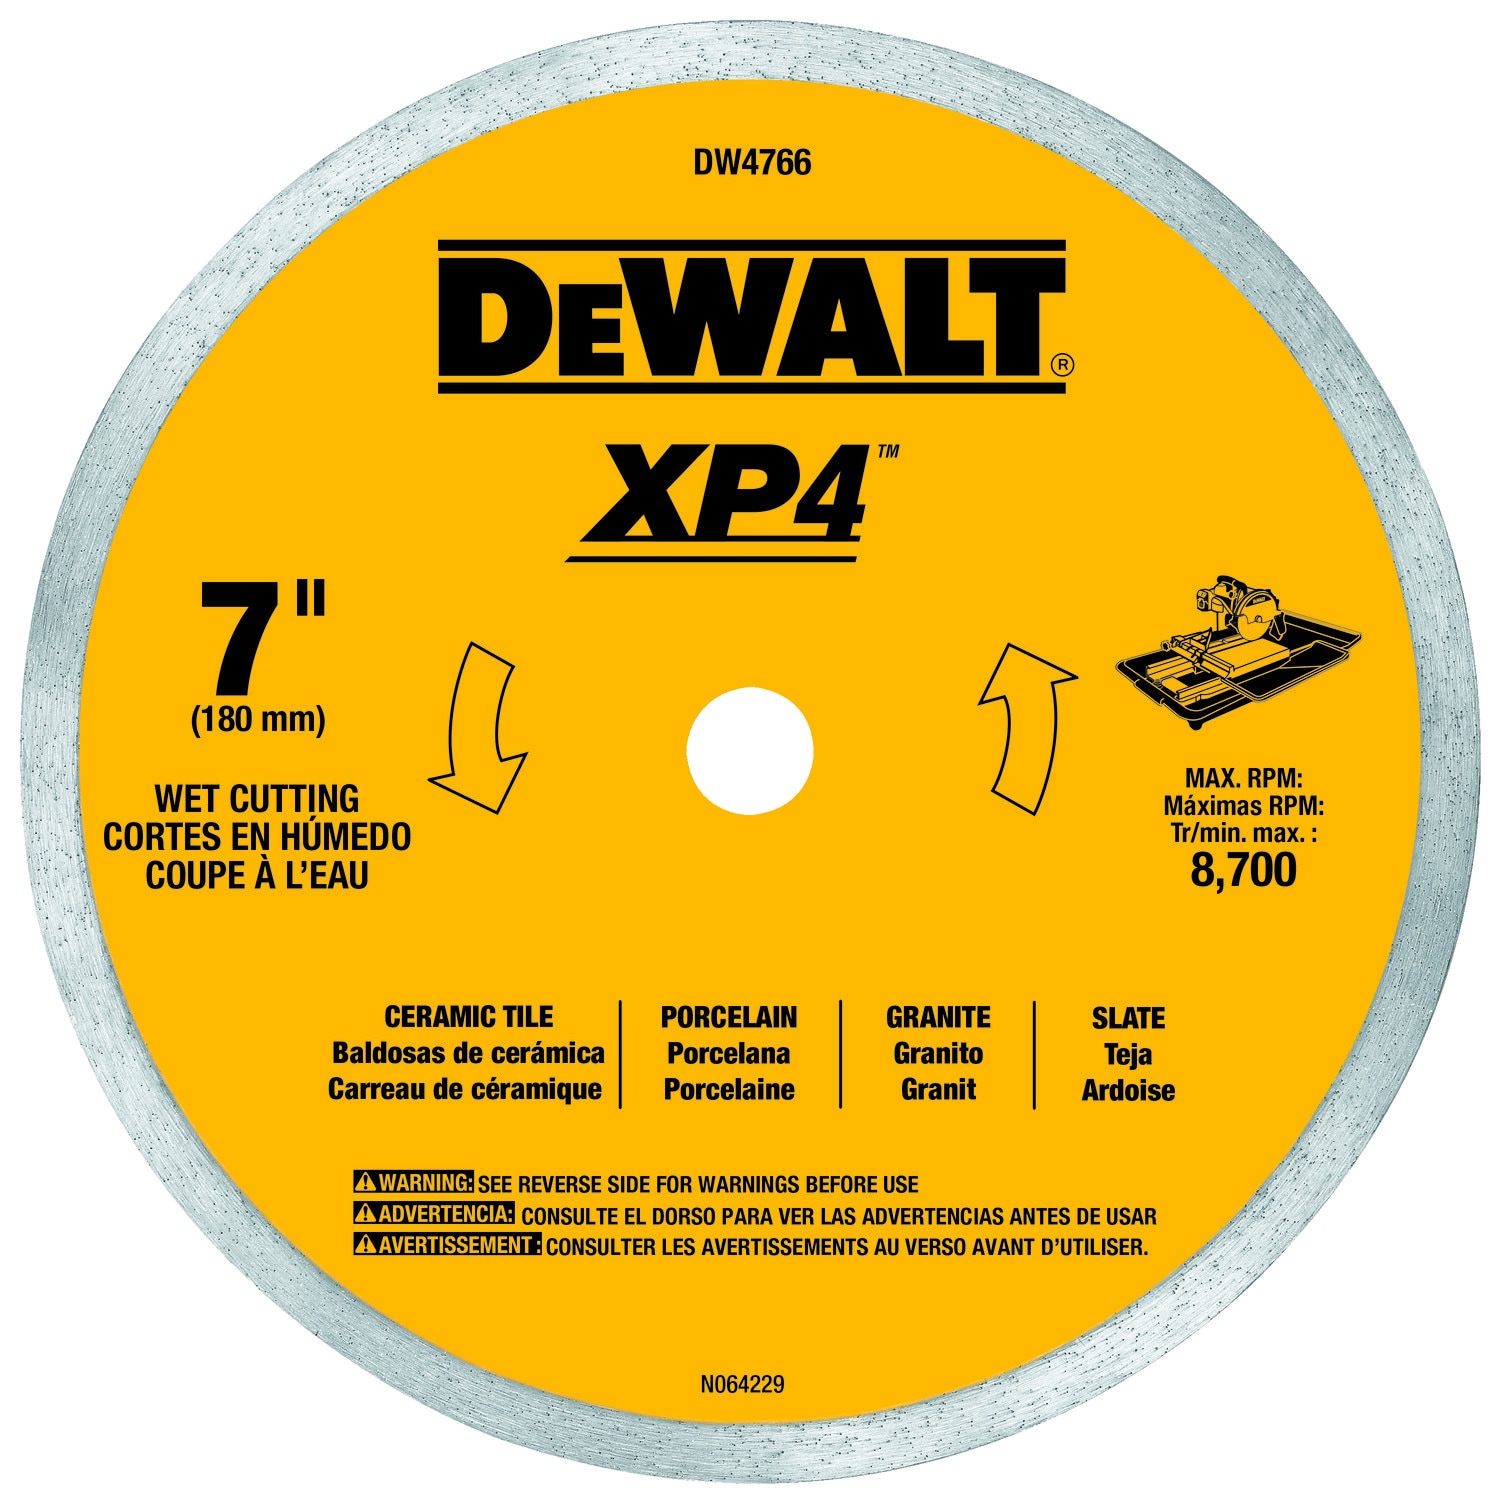 NEW Dewalt DW4766 7" Continuous Rim XP4 Diamond Tile Saw Blade Wet Cutting